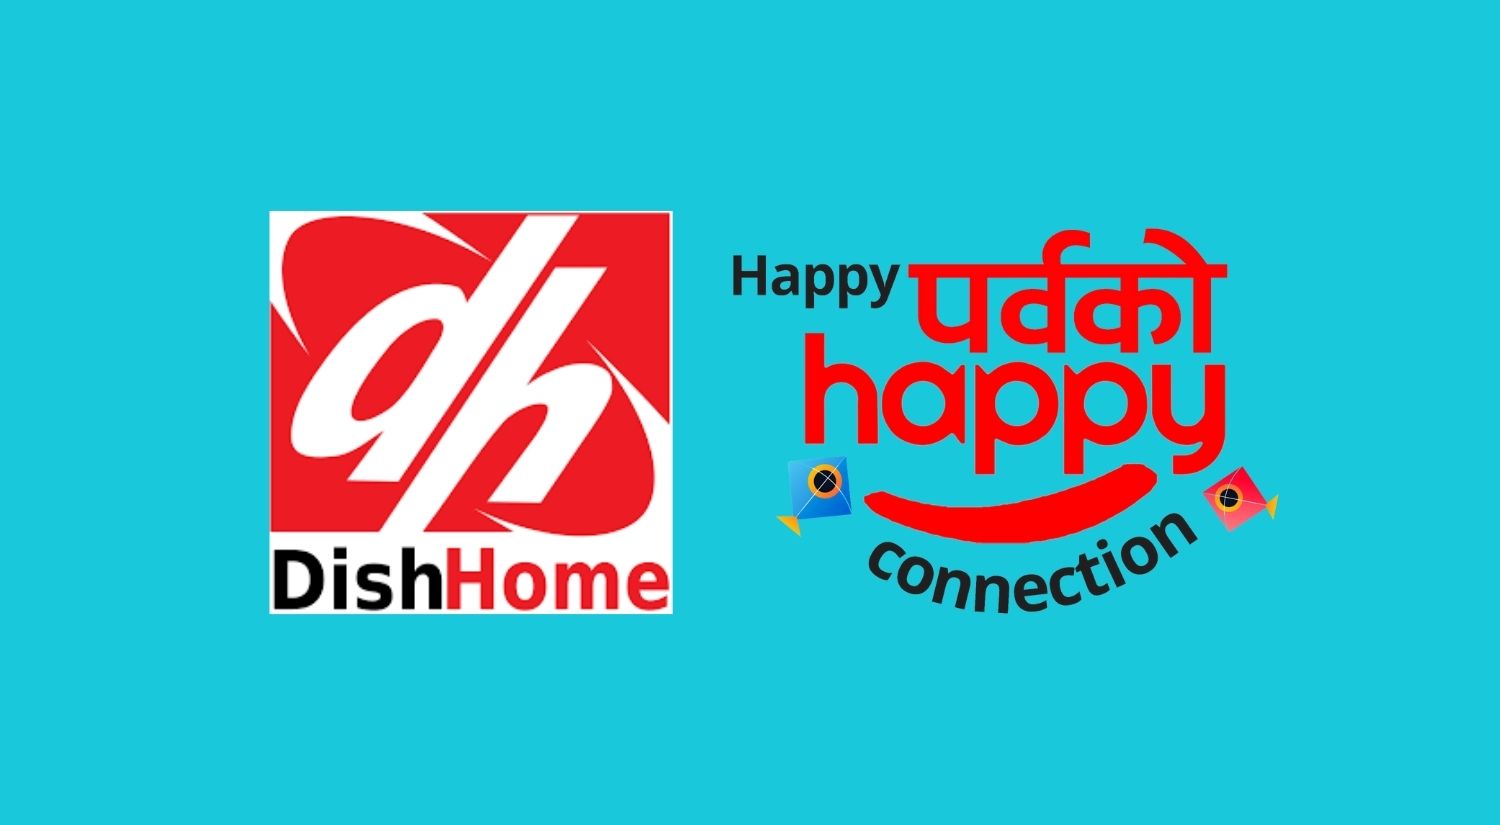 Dish Home Dashain Offer spain trip